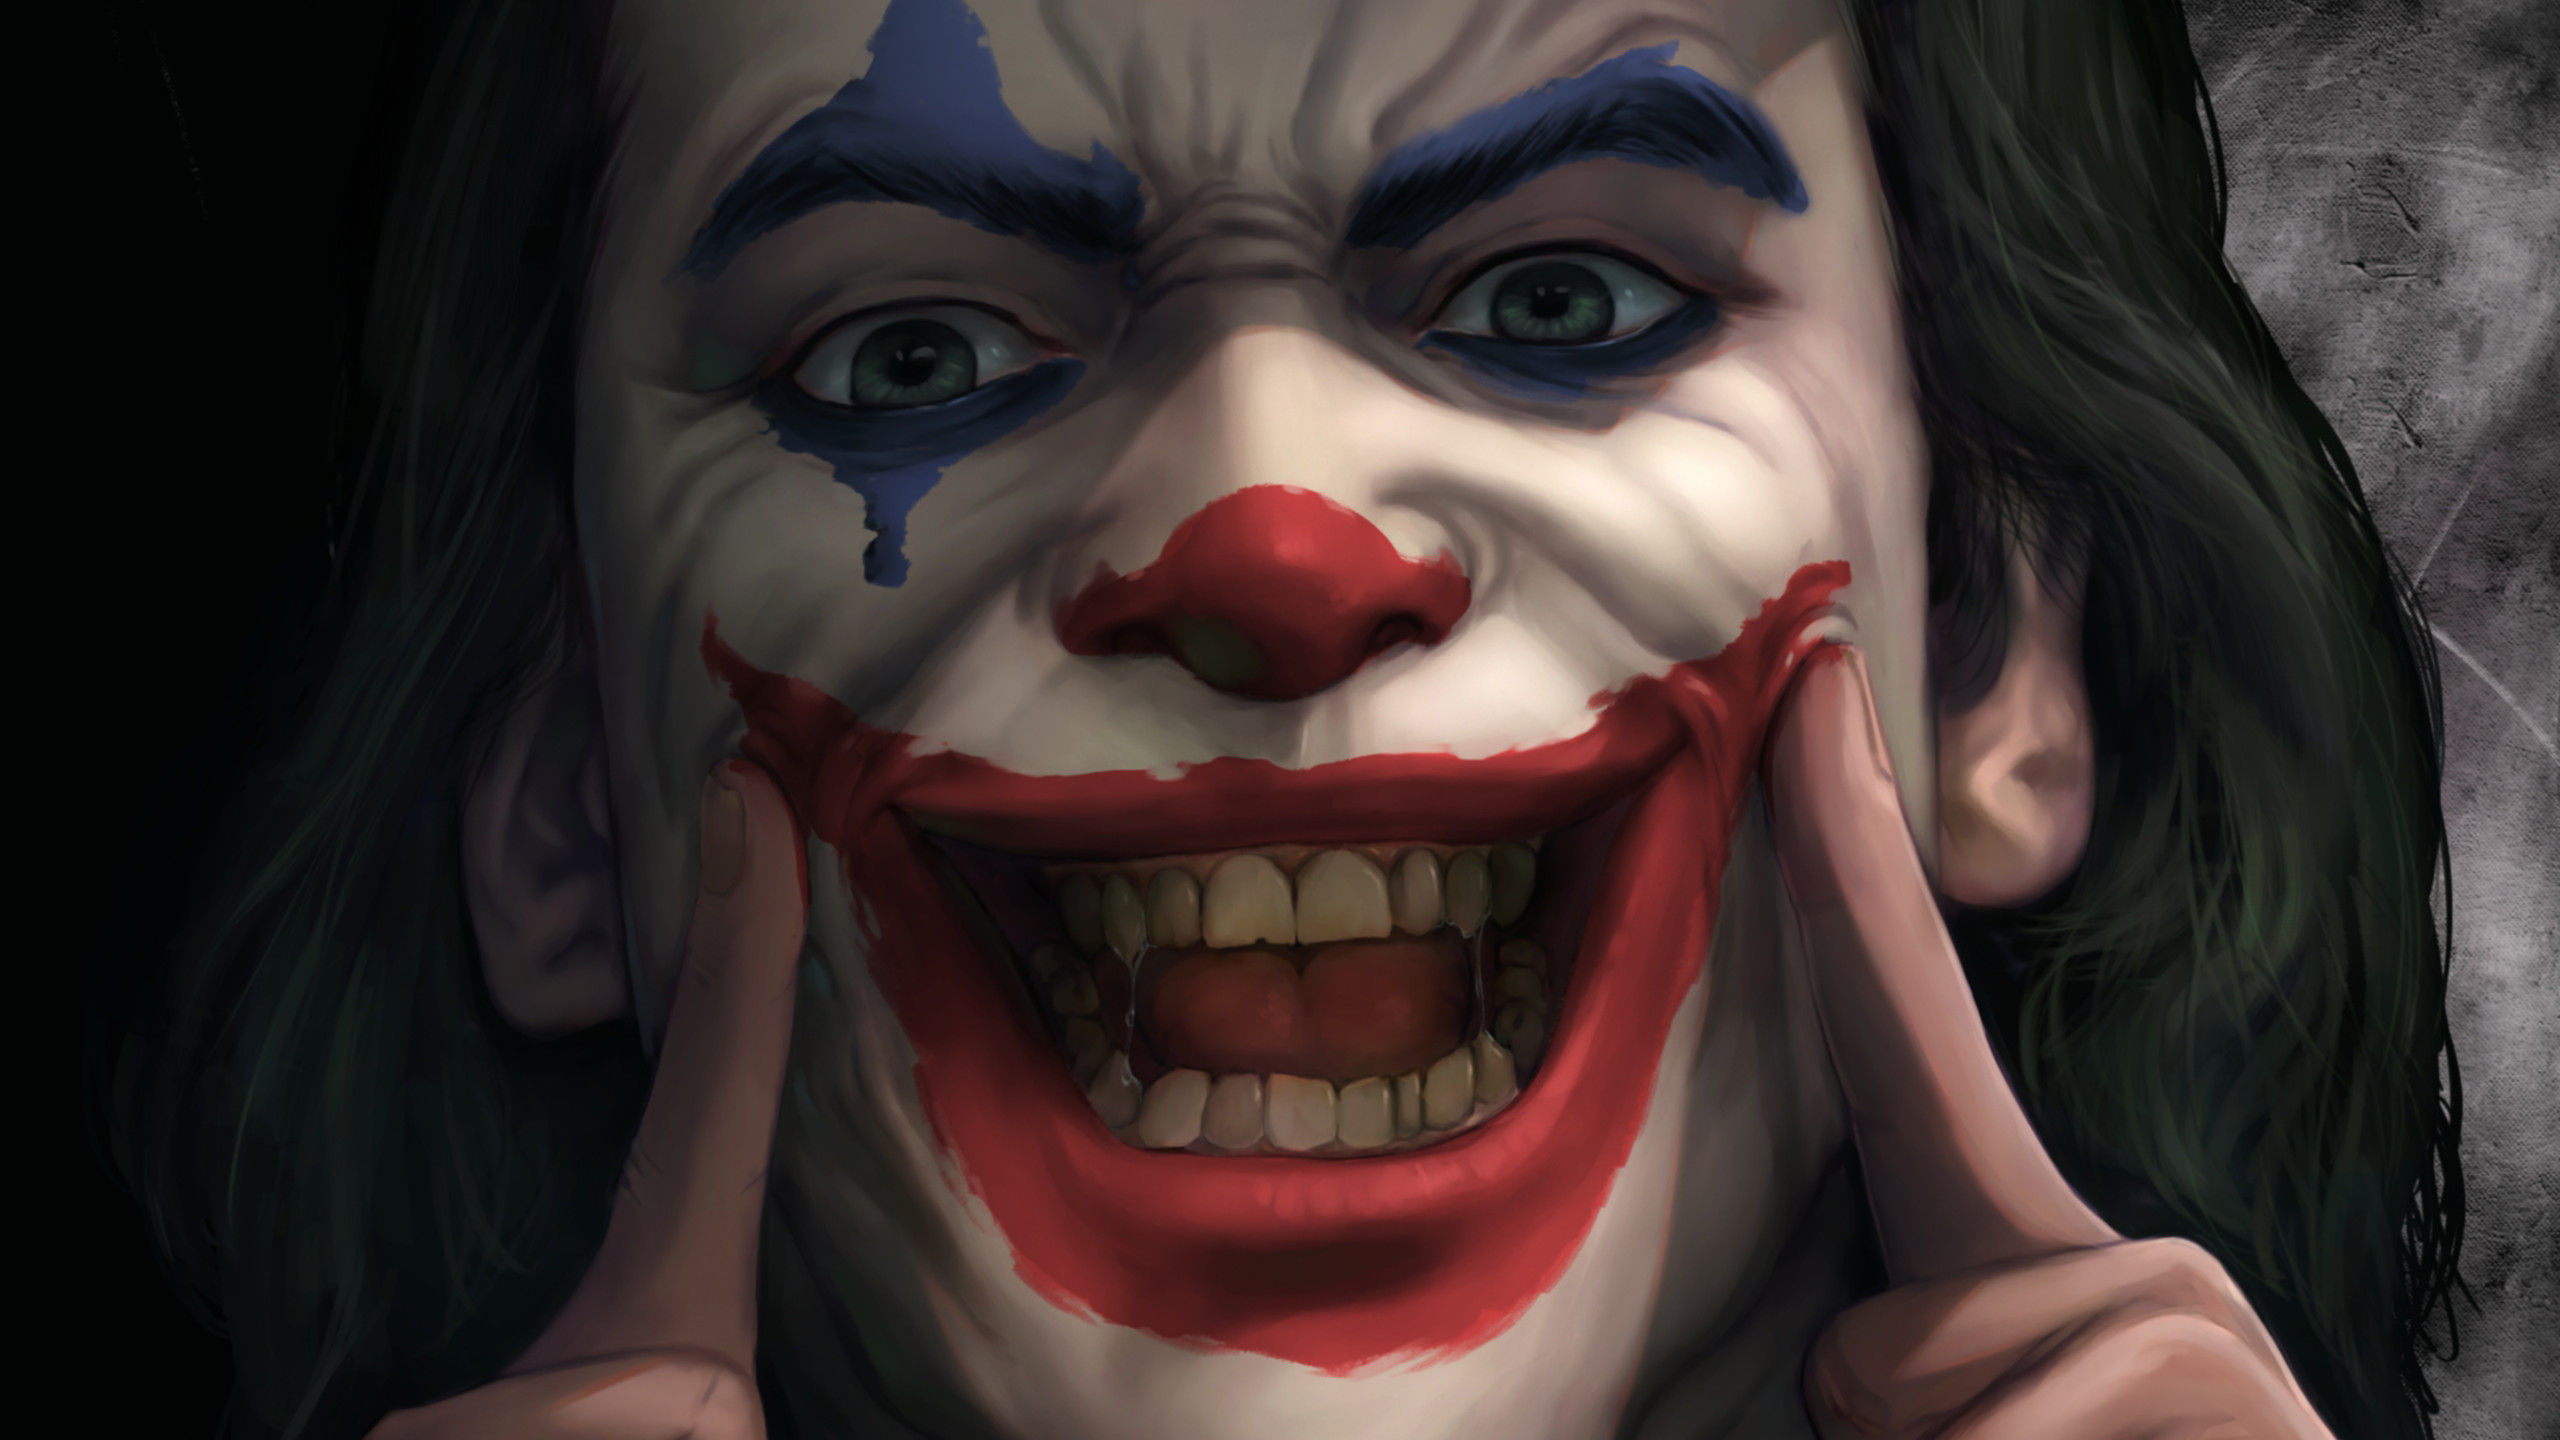 Joker Smile , HD Wallpaper & Backgrounds